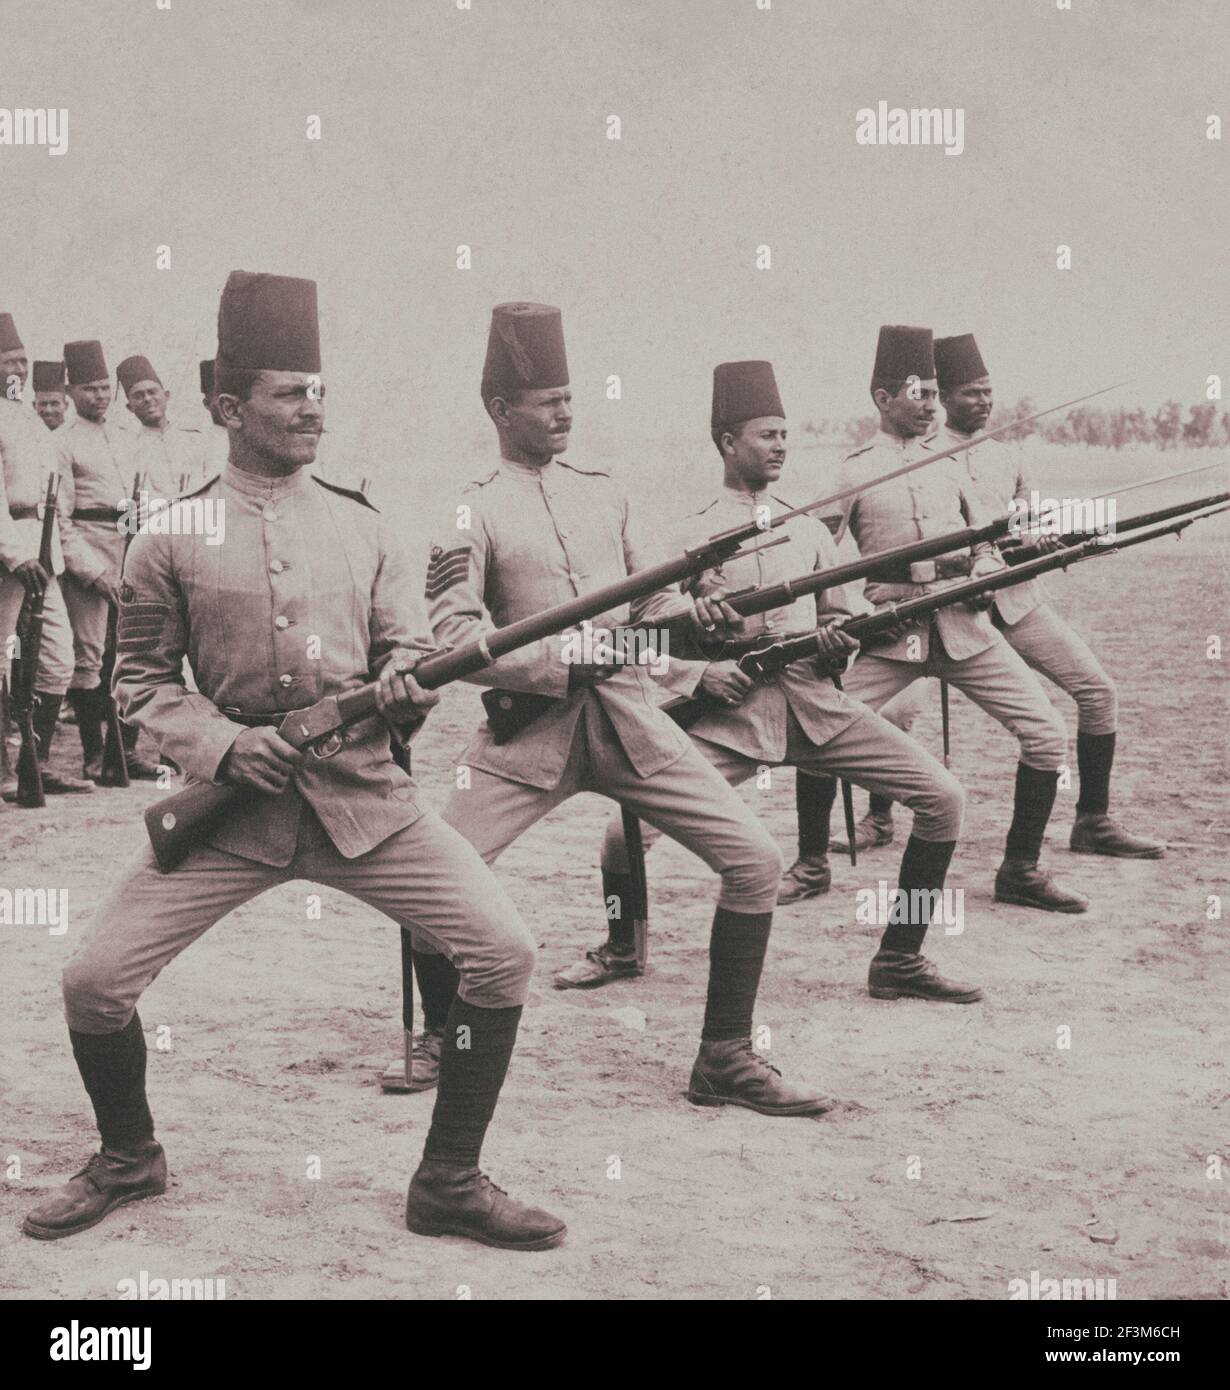 Vintage-Foto von ägyptischen Soldaten tragen Fezsen mit ihren militärischen Uniformen üben eine Bajonettbohrer. Kairo, Ägypten. 1903 Stockfoto